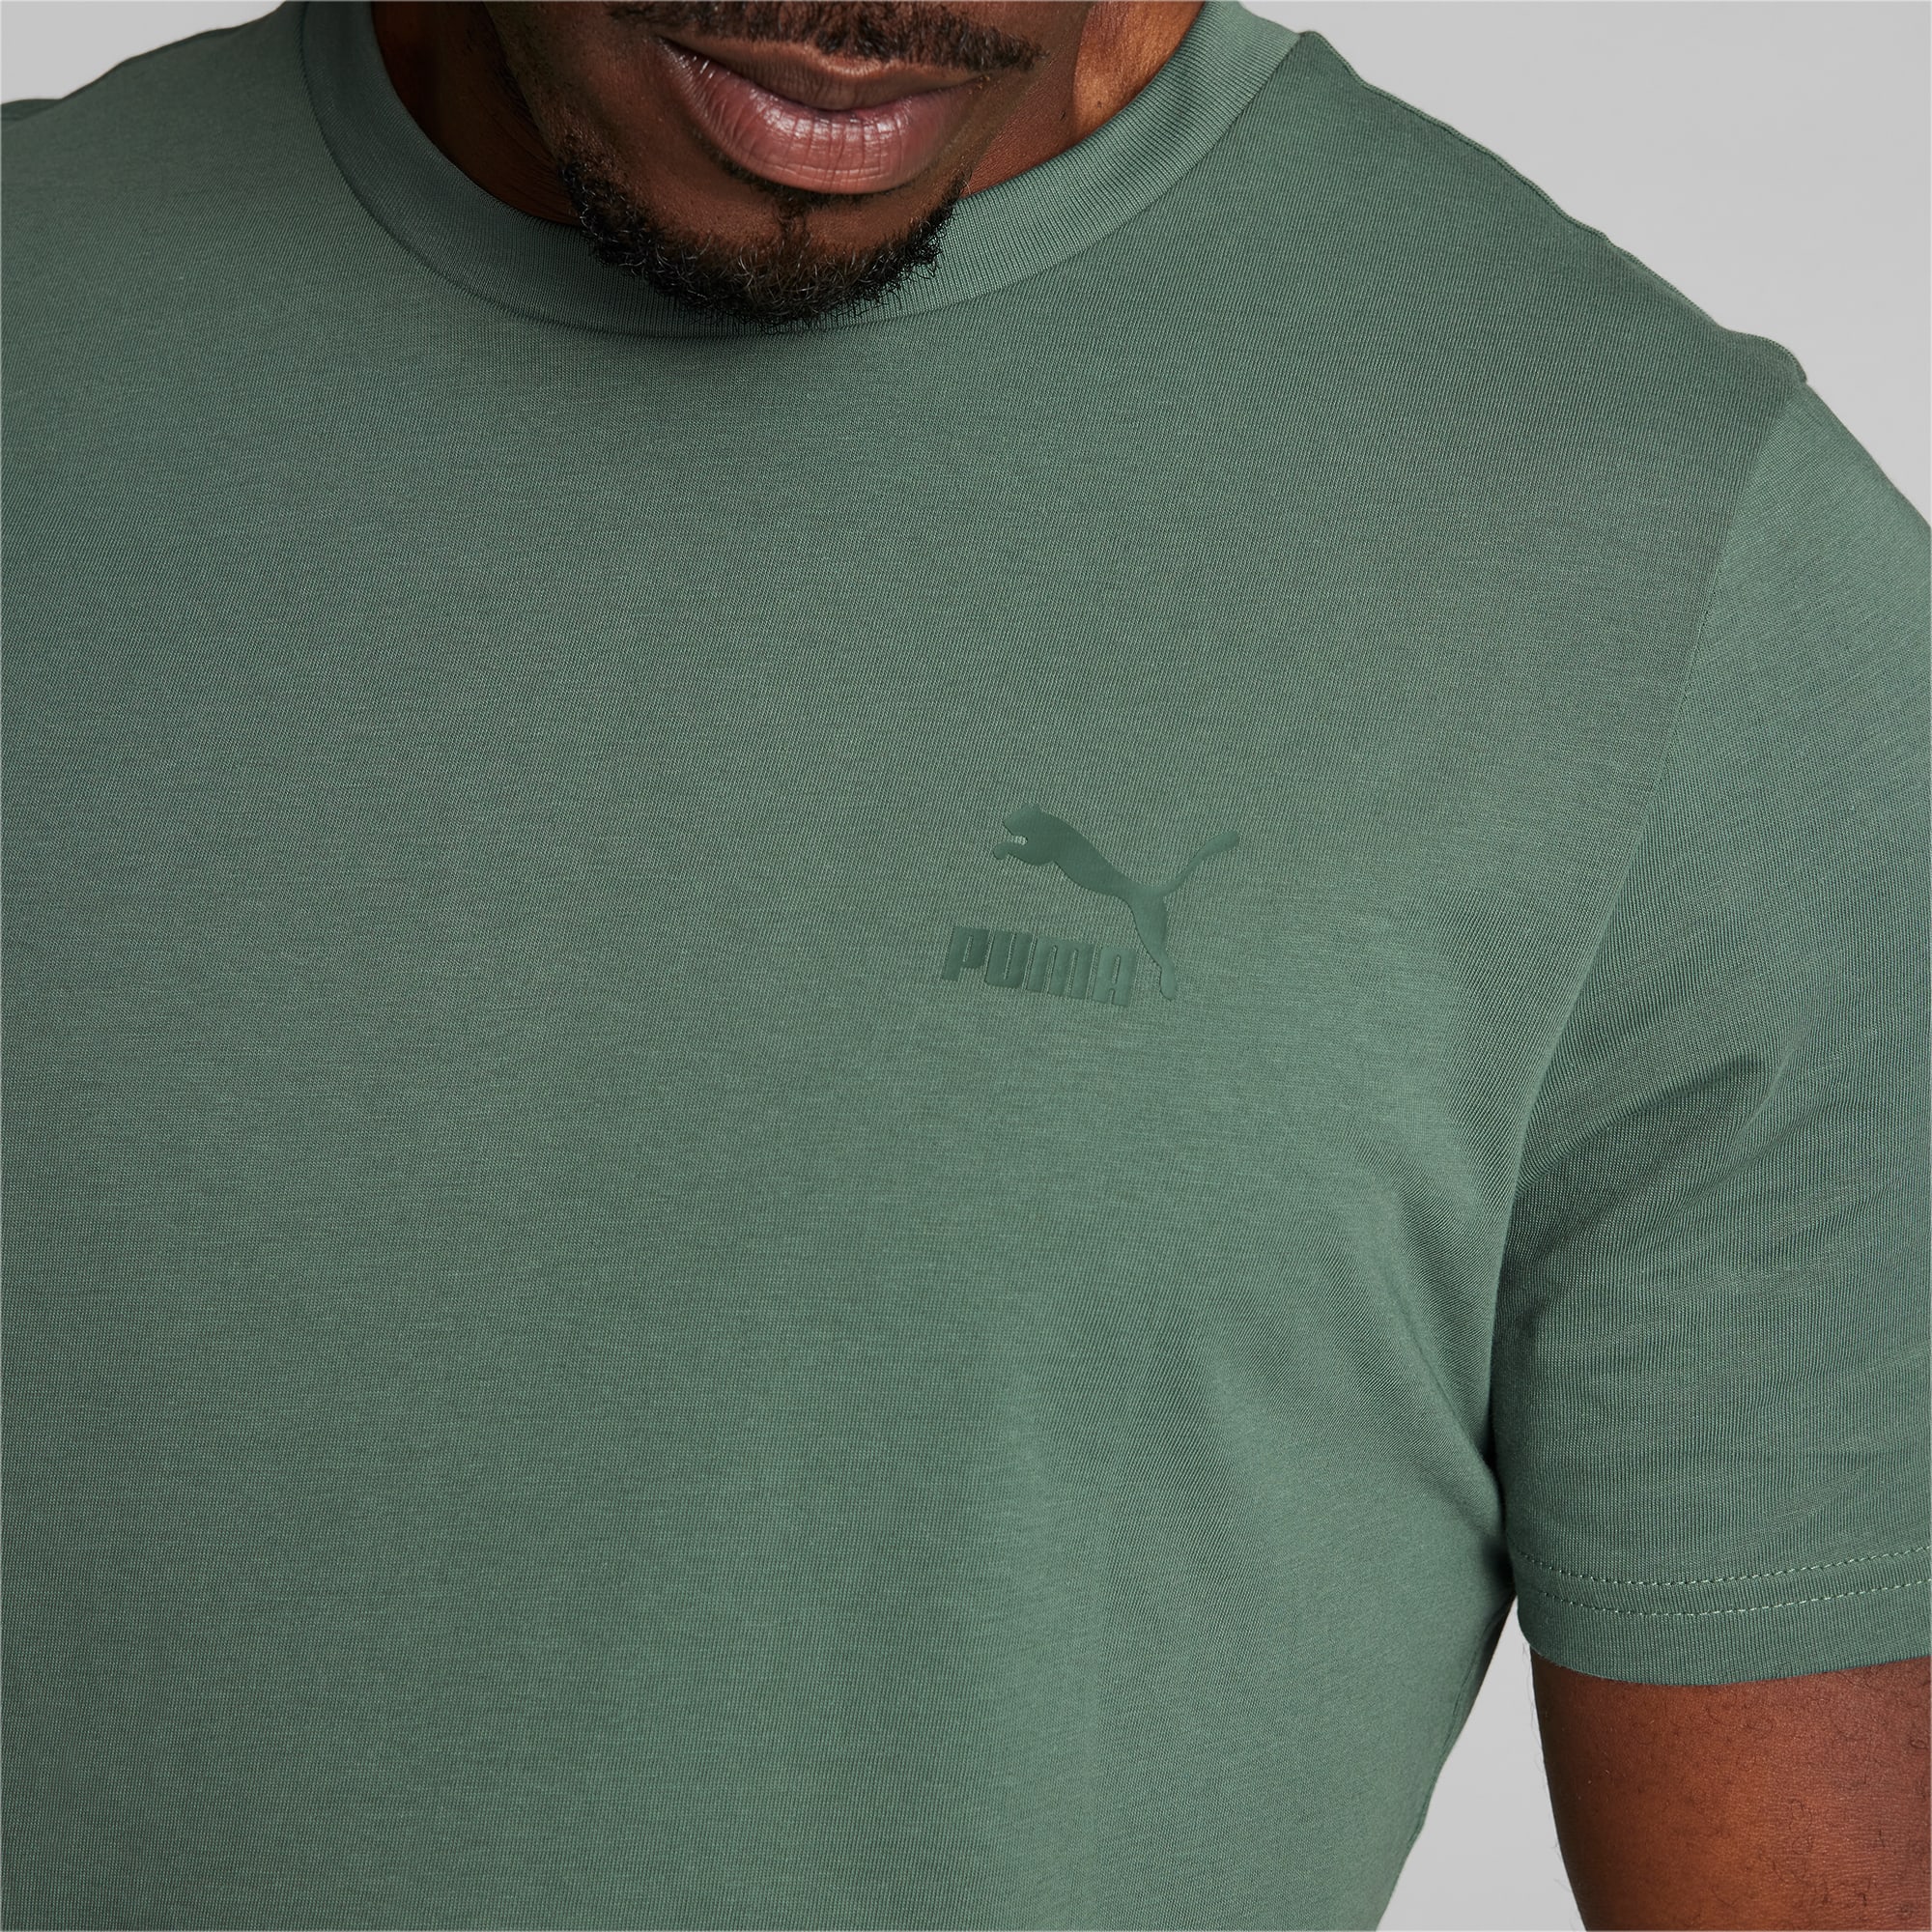 T-shirt Puma Classics Small Logo Tee Men